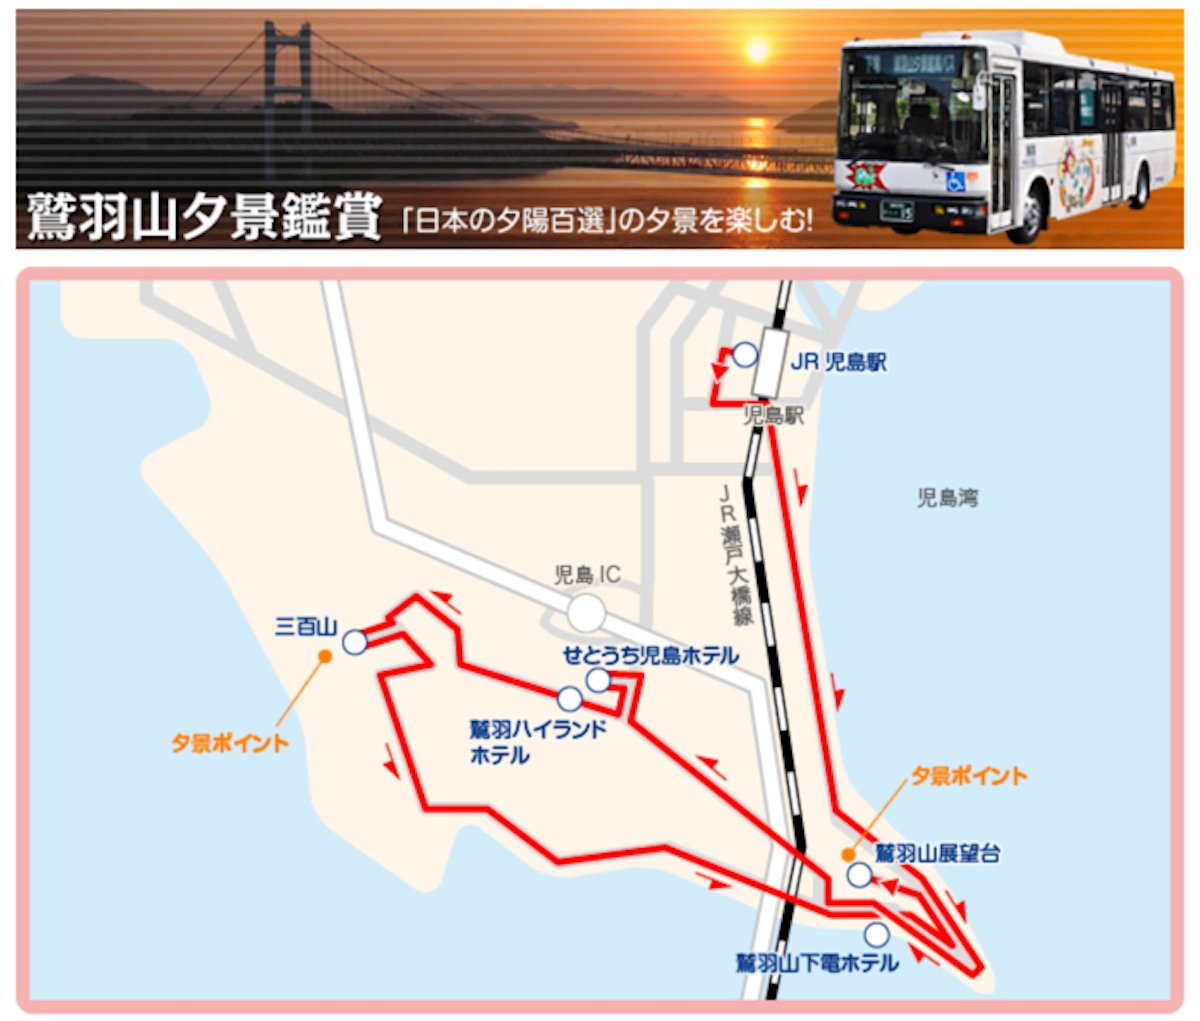 教您如何搭乘夕陽巴士到鷲羽山展望台看瀨戶大橋夕陽